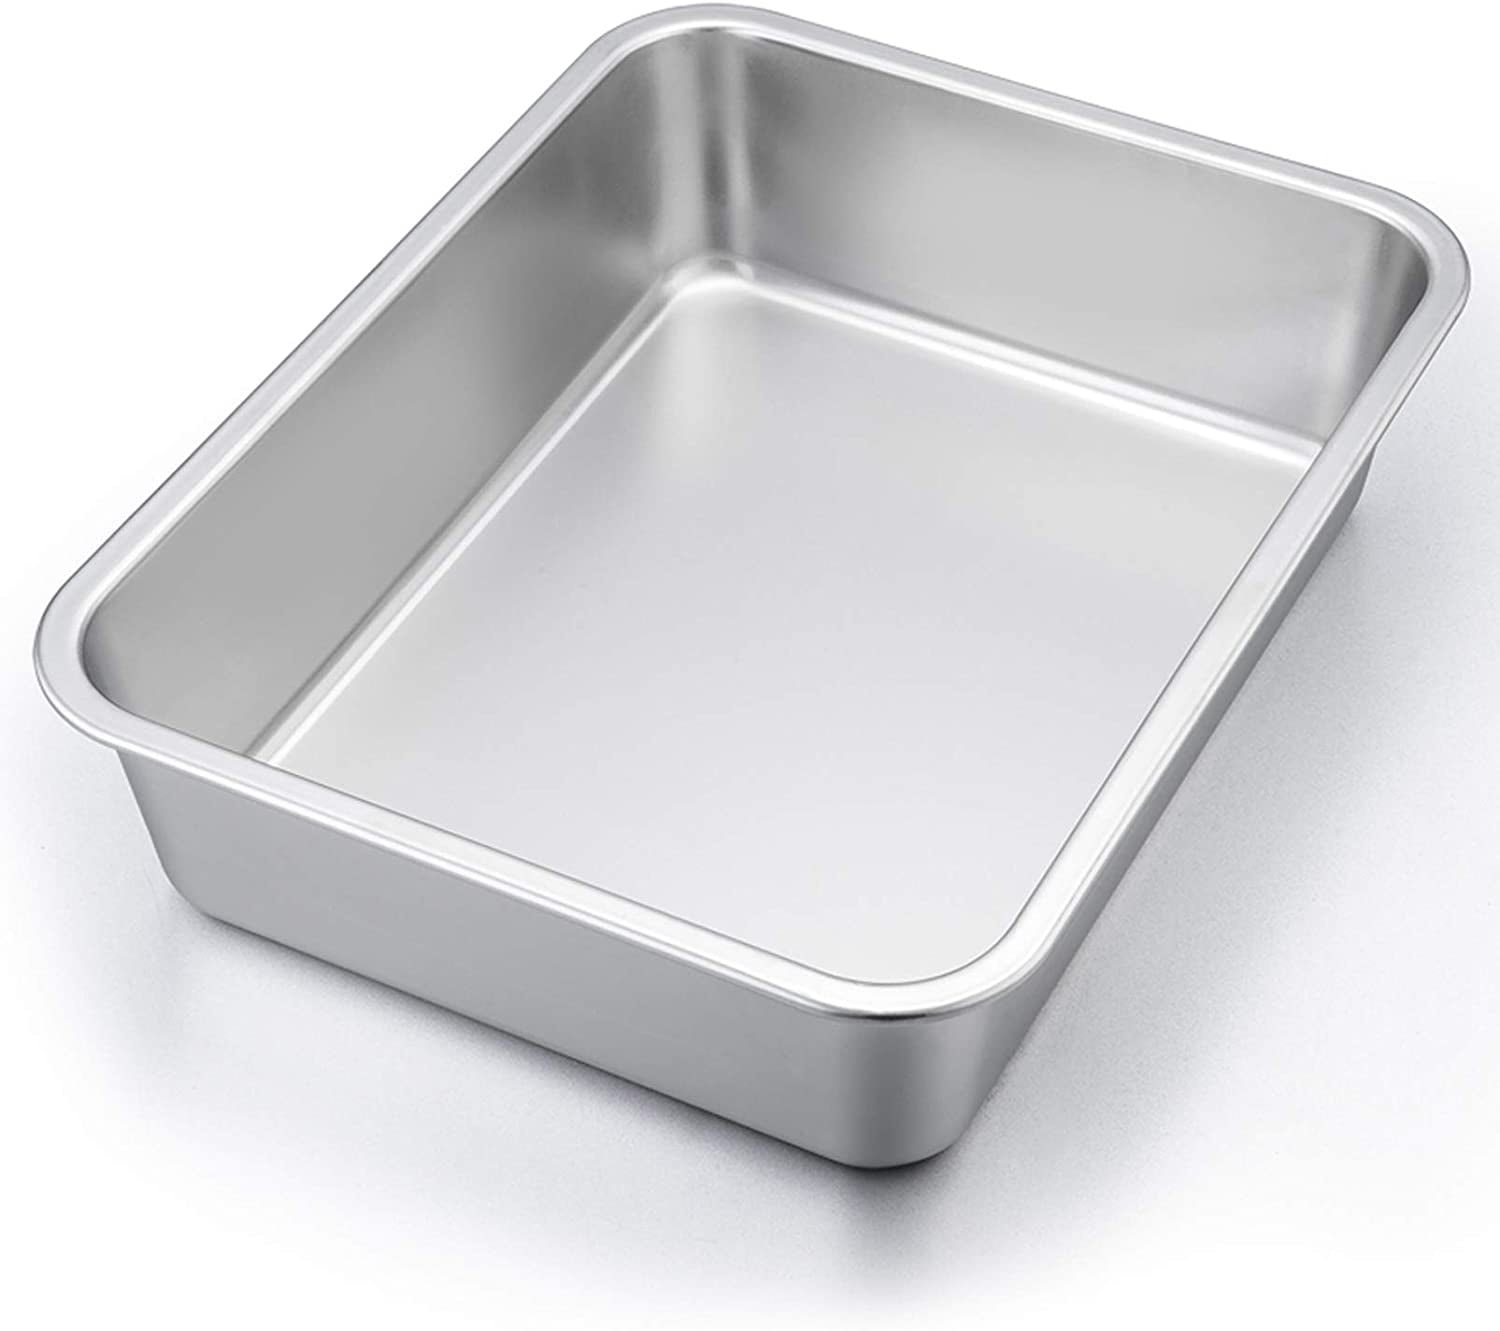 Dishwasher Safe Non-toxic & Durable P&P CHEF Stainless Steel Bakeware Pans Sets Including Baking Pan/Round Cake Pan/Muffin Pan/Loaf Pan/Deep Lasagna Pan & Lid 6-Piece Bakeware Kitchen Set 